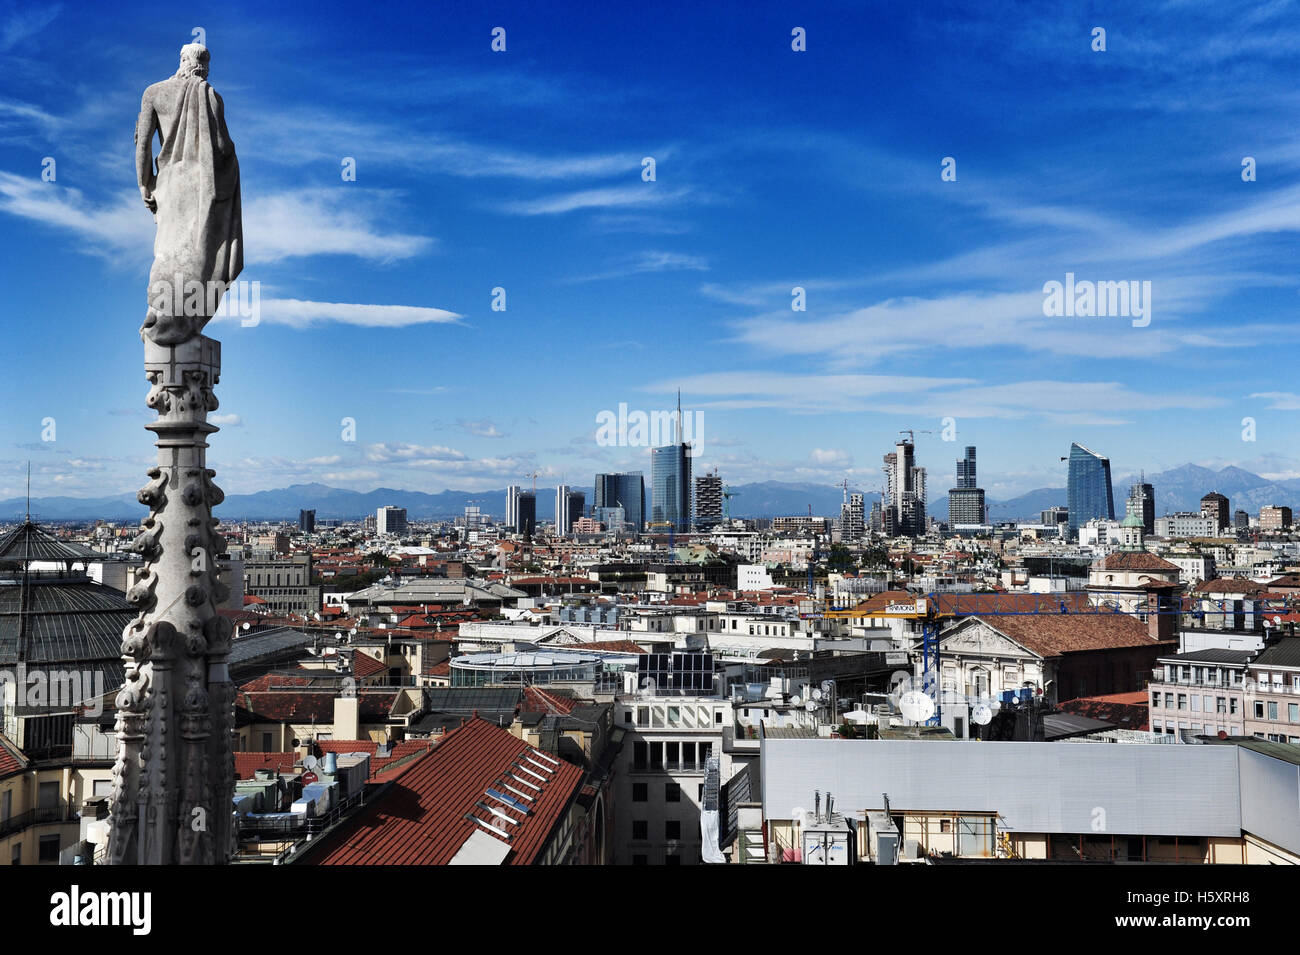 La vista dalla cima del Duomo di Milano. In lontananza le nuovi grattacieli della zona di Porta Nuova può essere visto. Foto Stock